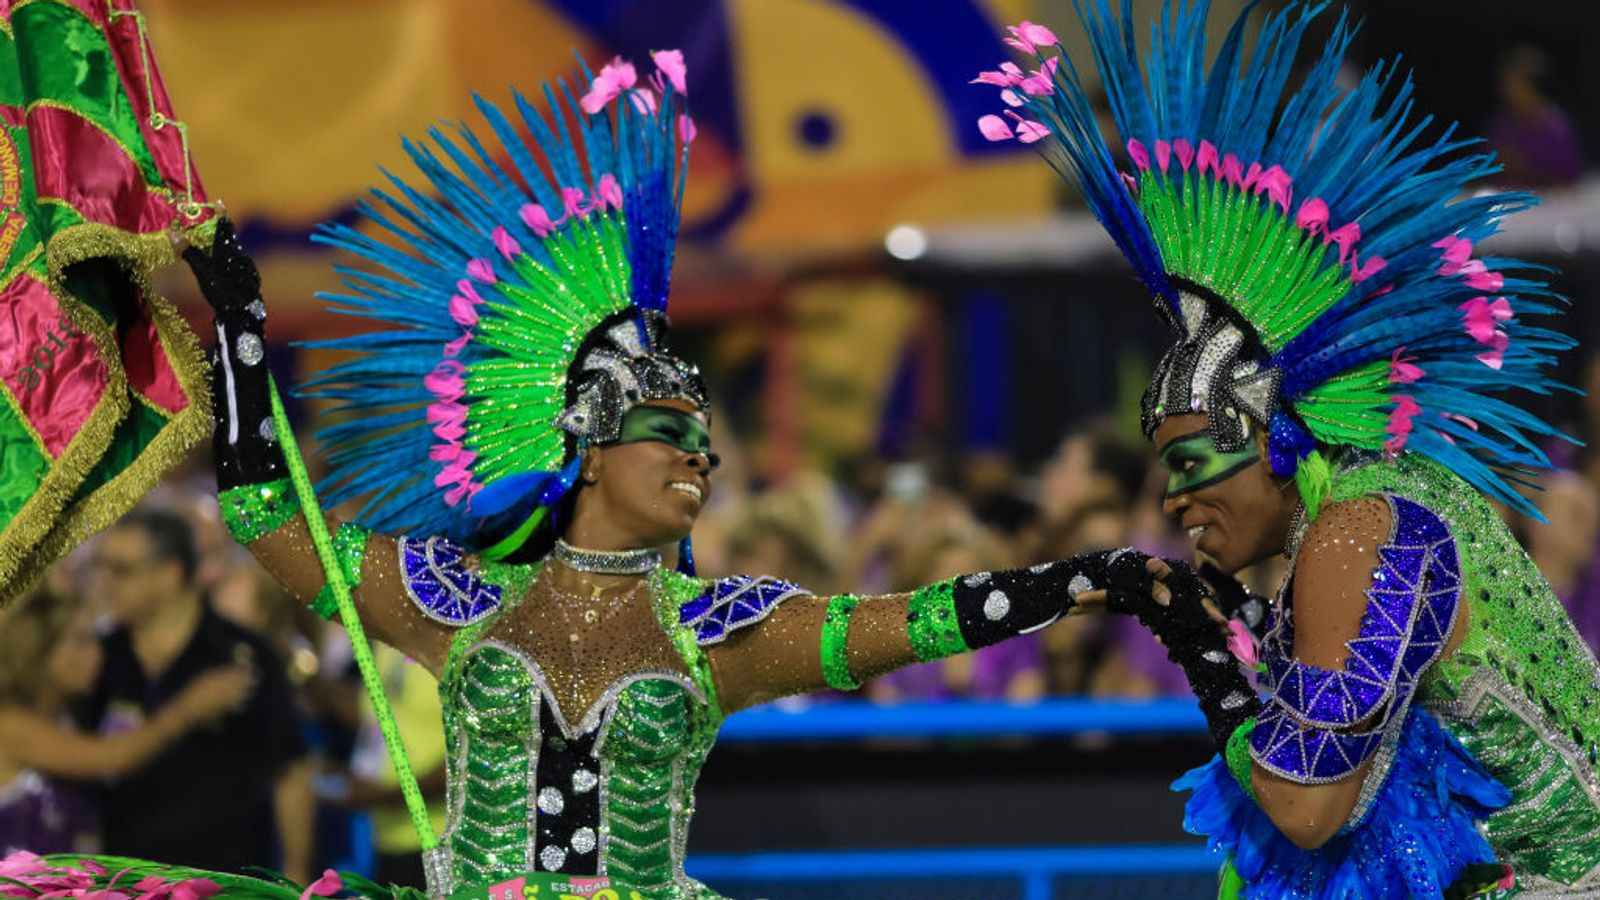 دو دختر برزیلی در اجرای رقص - نارون اکوتور